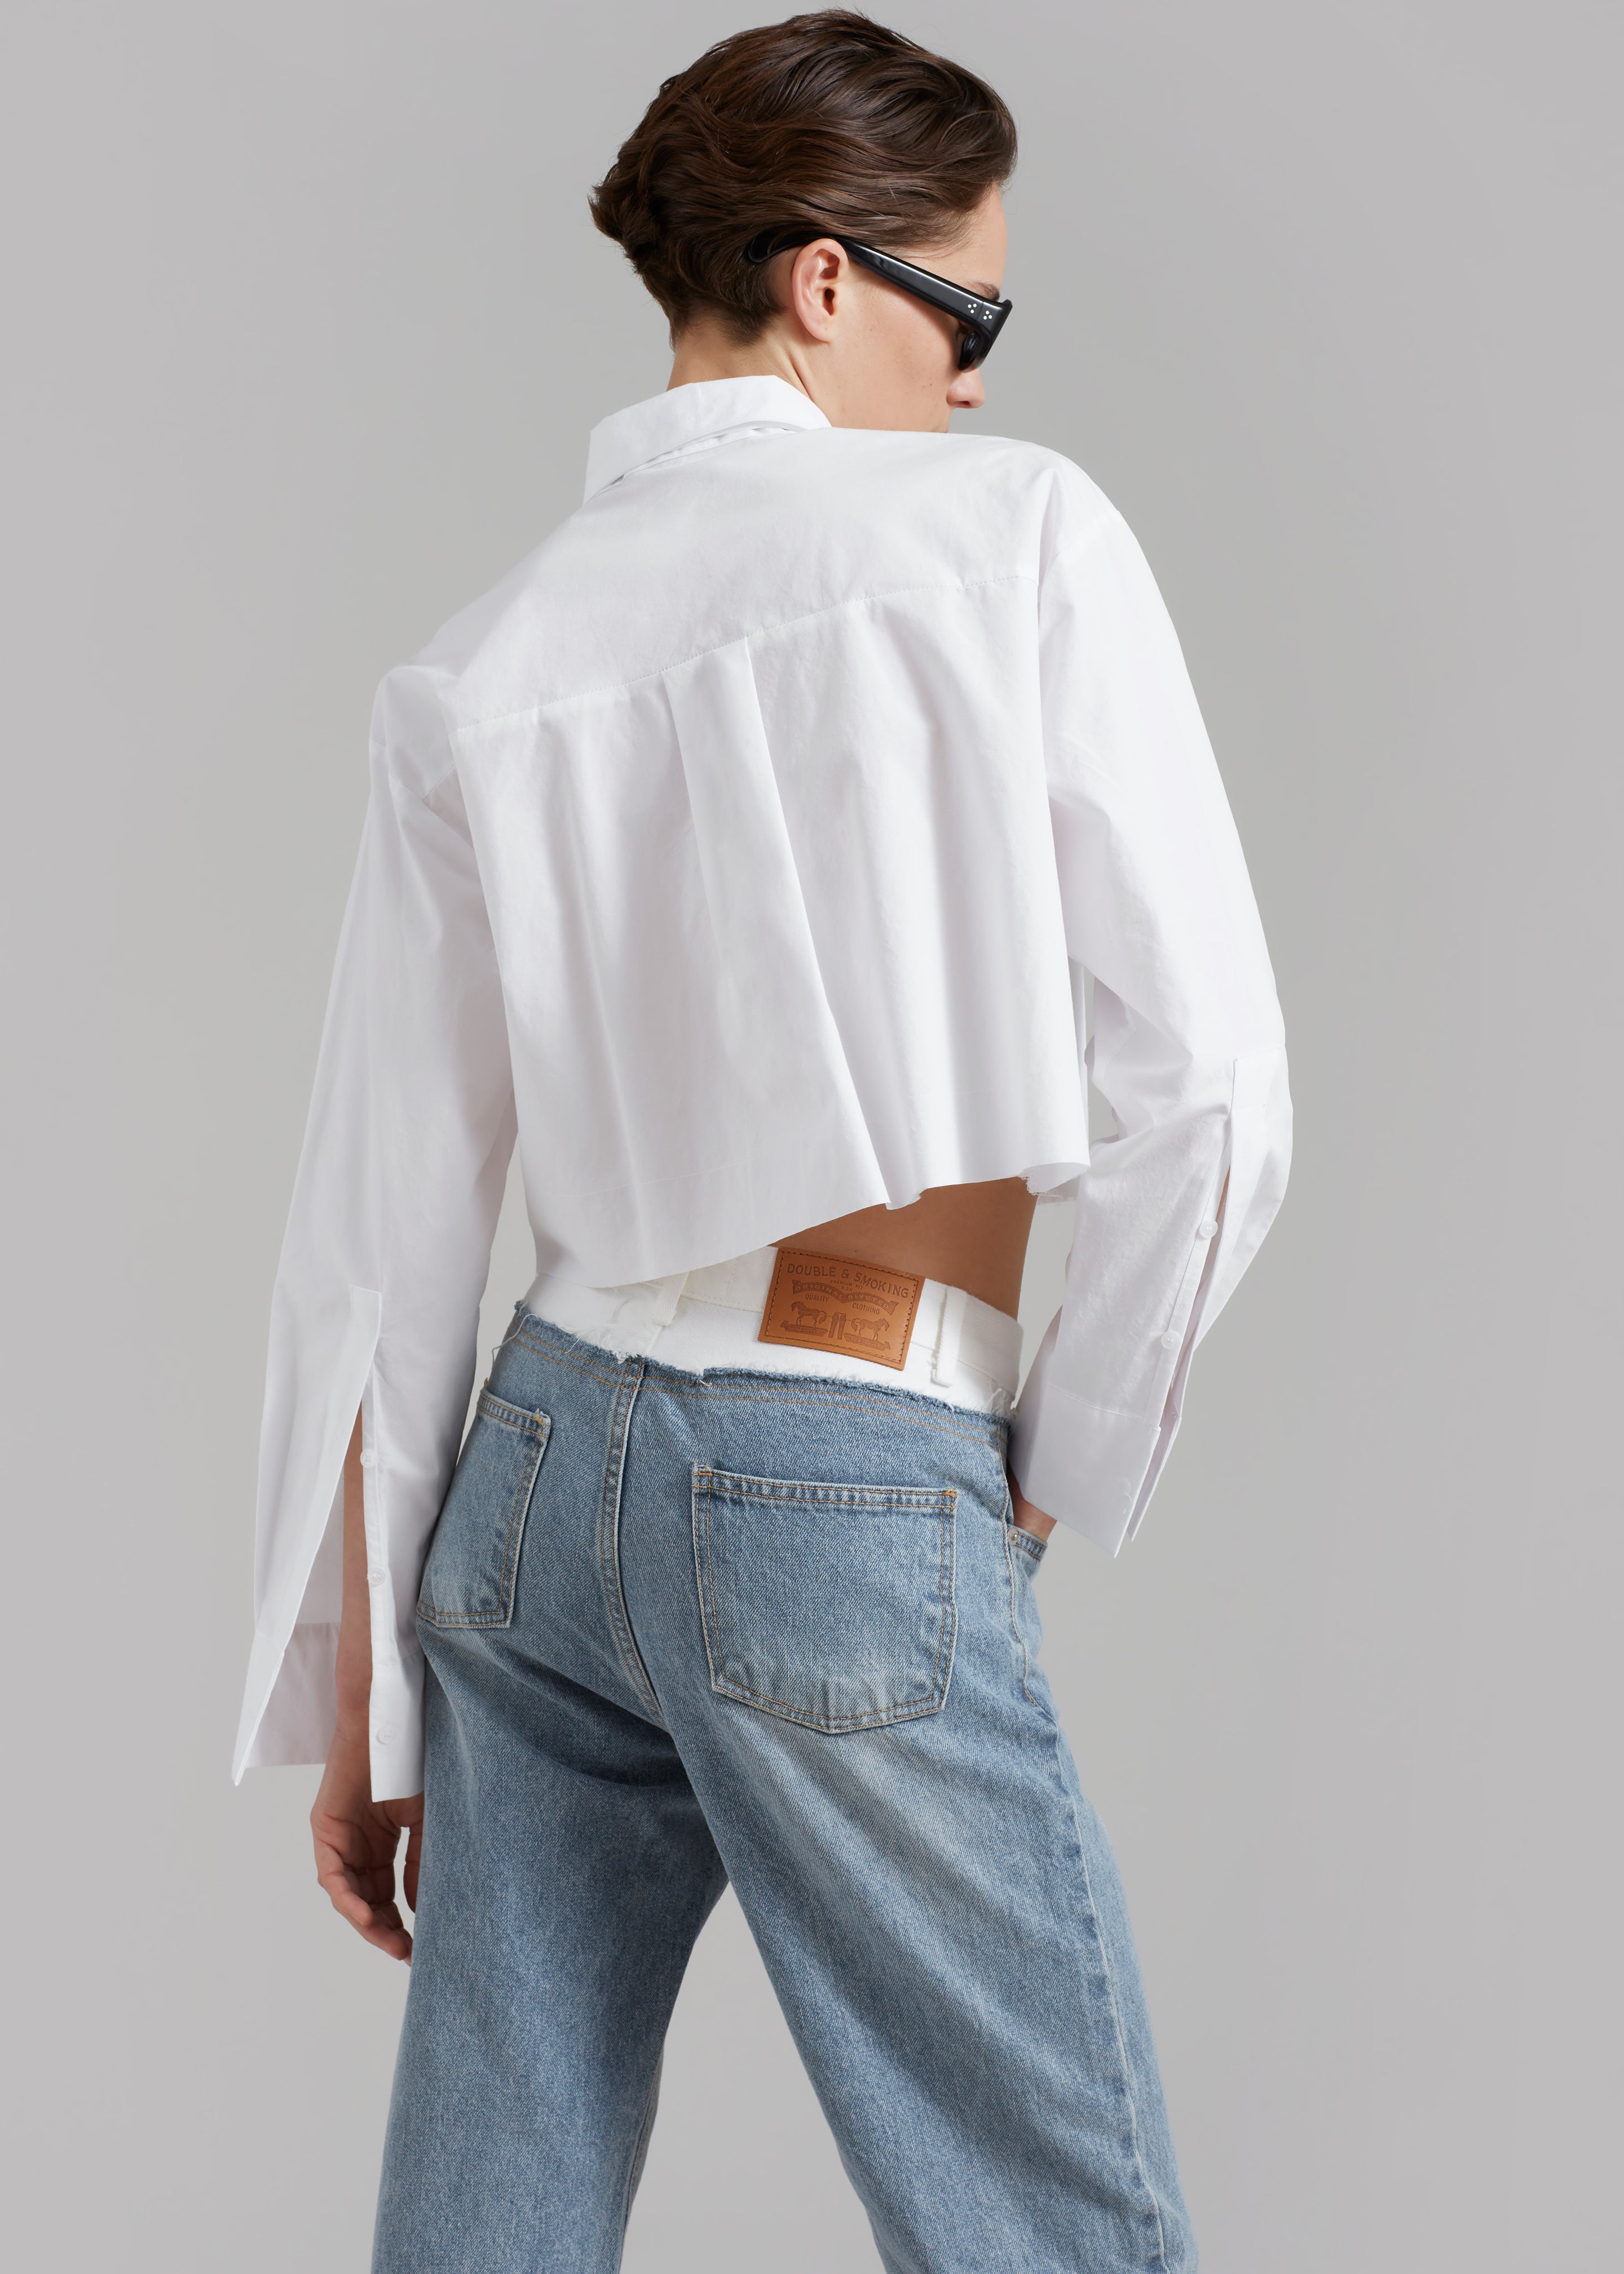 Annie Necktie Shirt - White - 6